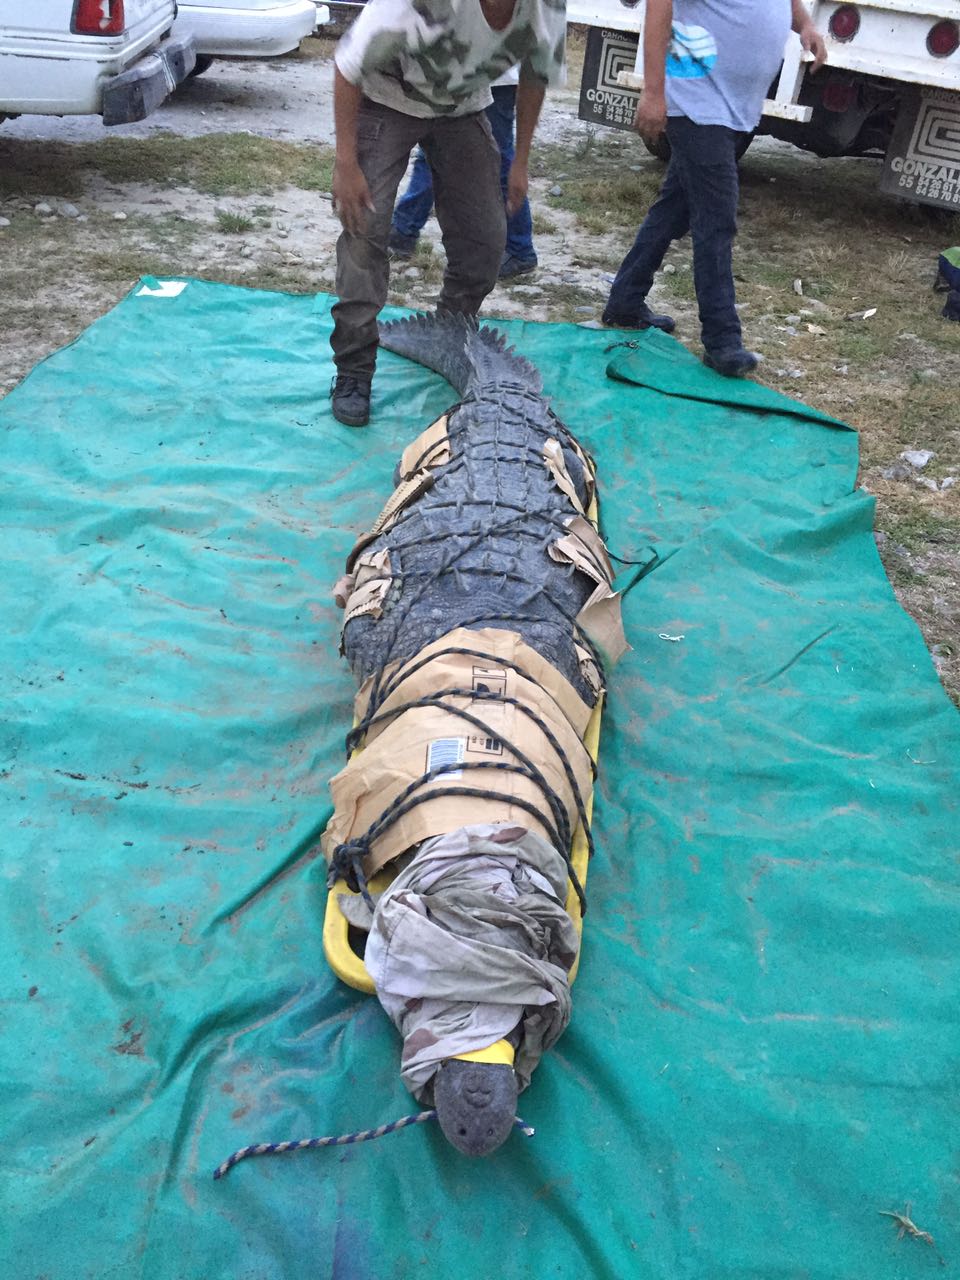 El pasado 12 de marzo, un ataque de cocodrilo ocasionó una pérdida humana, en la Reserva de la Biosfera la Encrucijada, Chiapas.